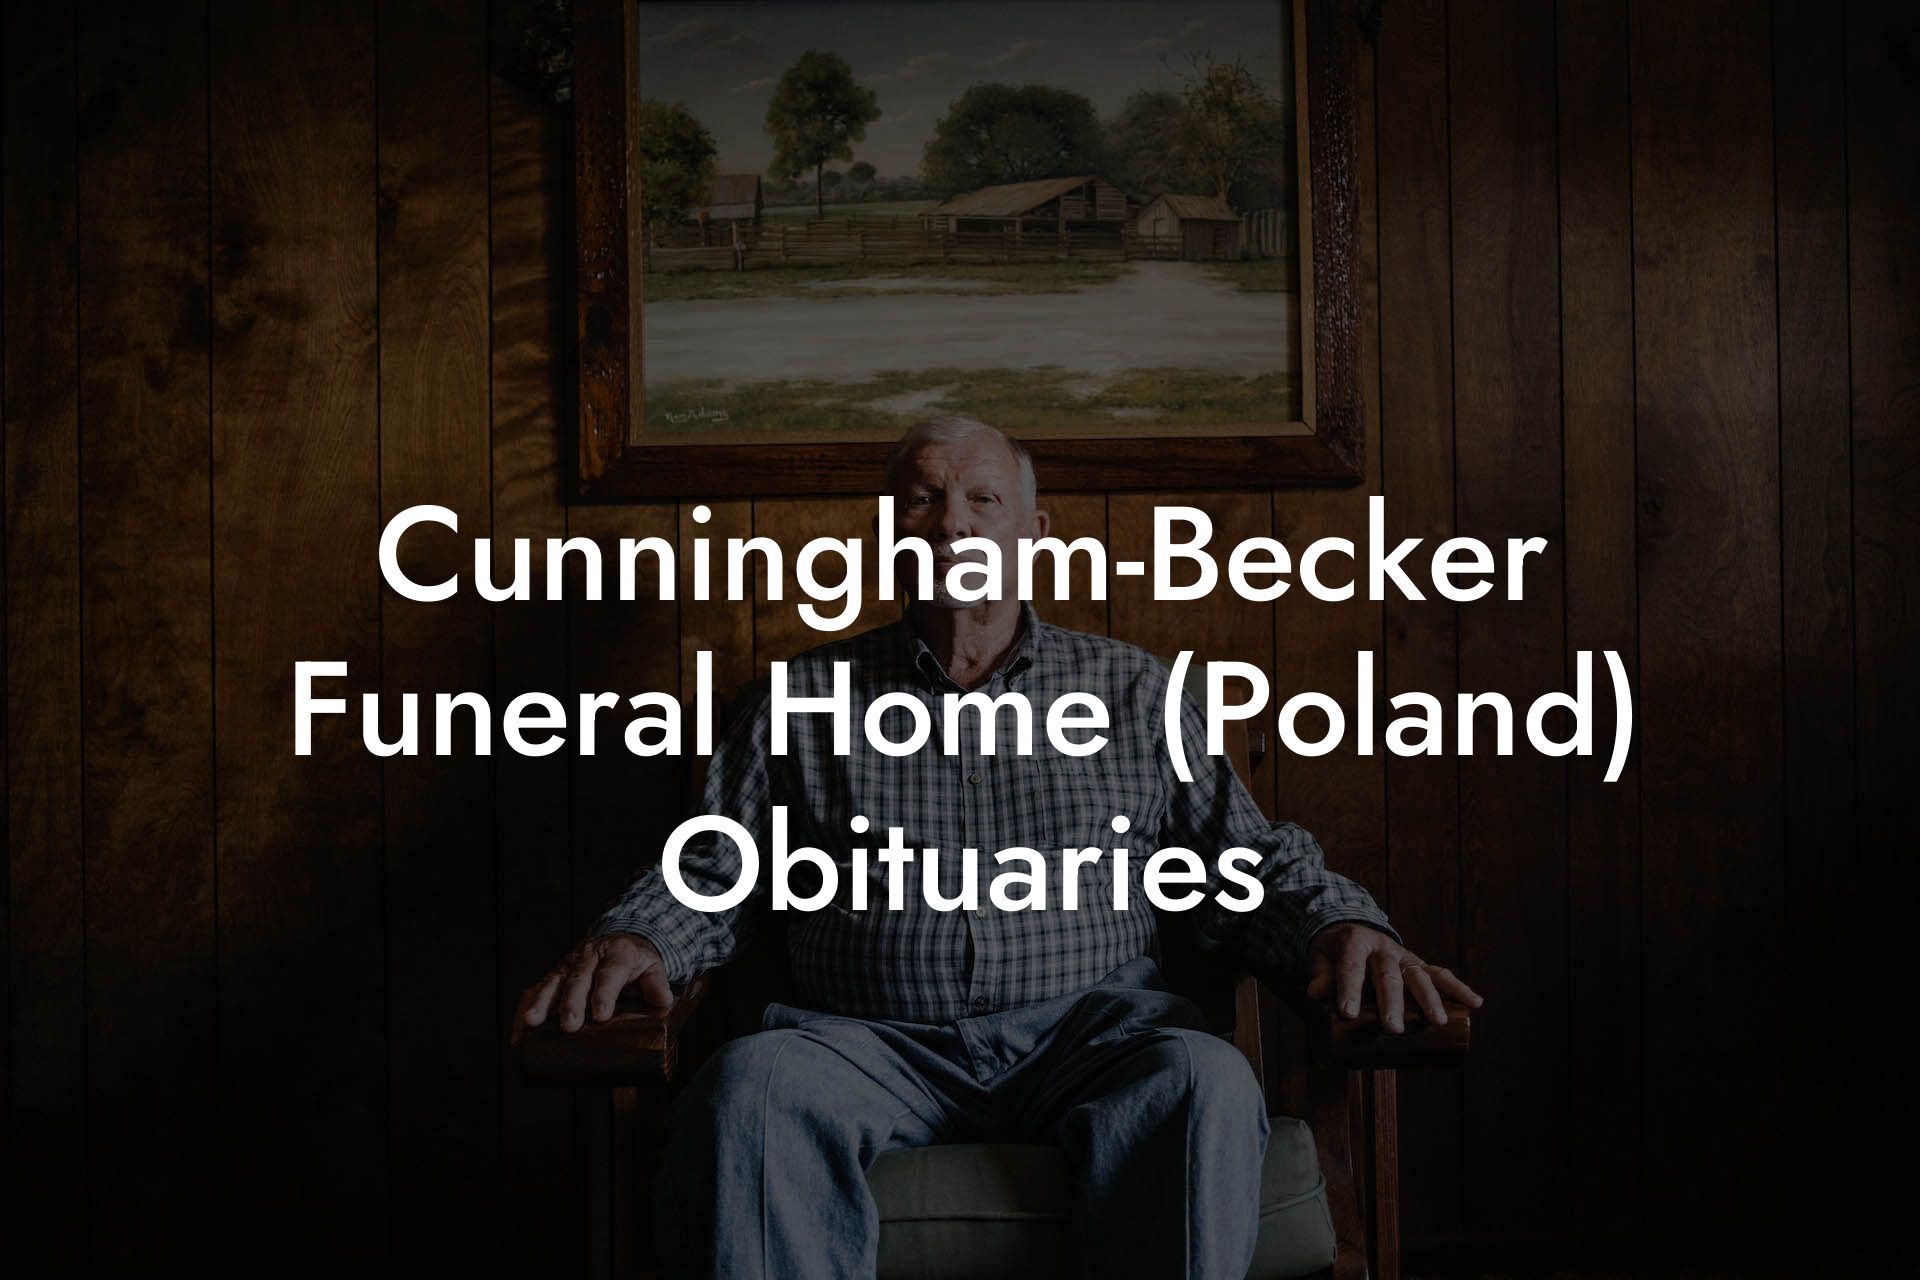 Cunningham-Becker Funeral Home (Poland) Obituaries